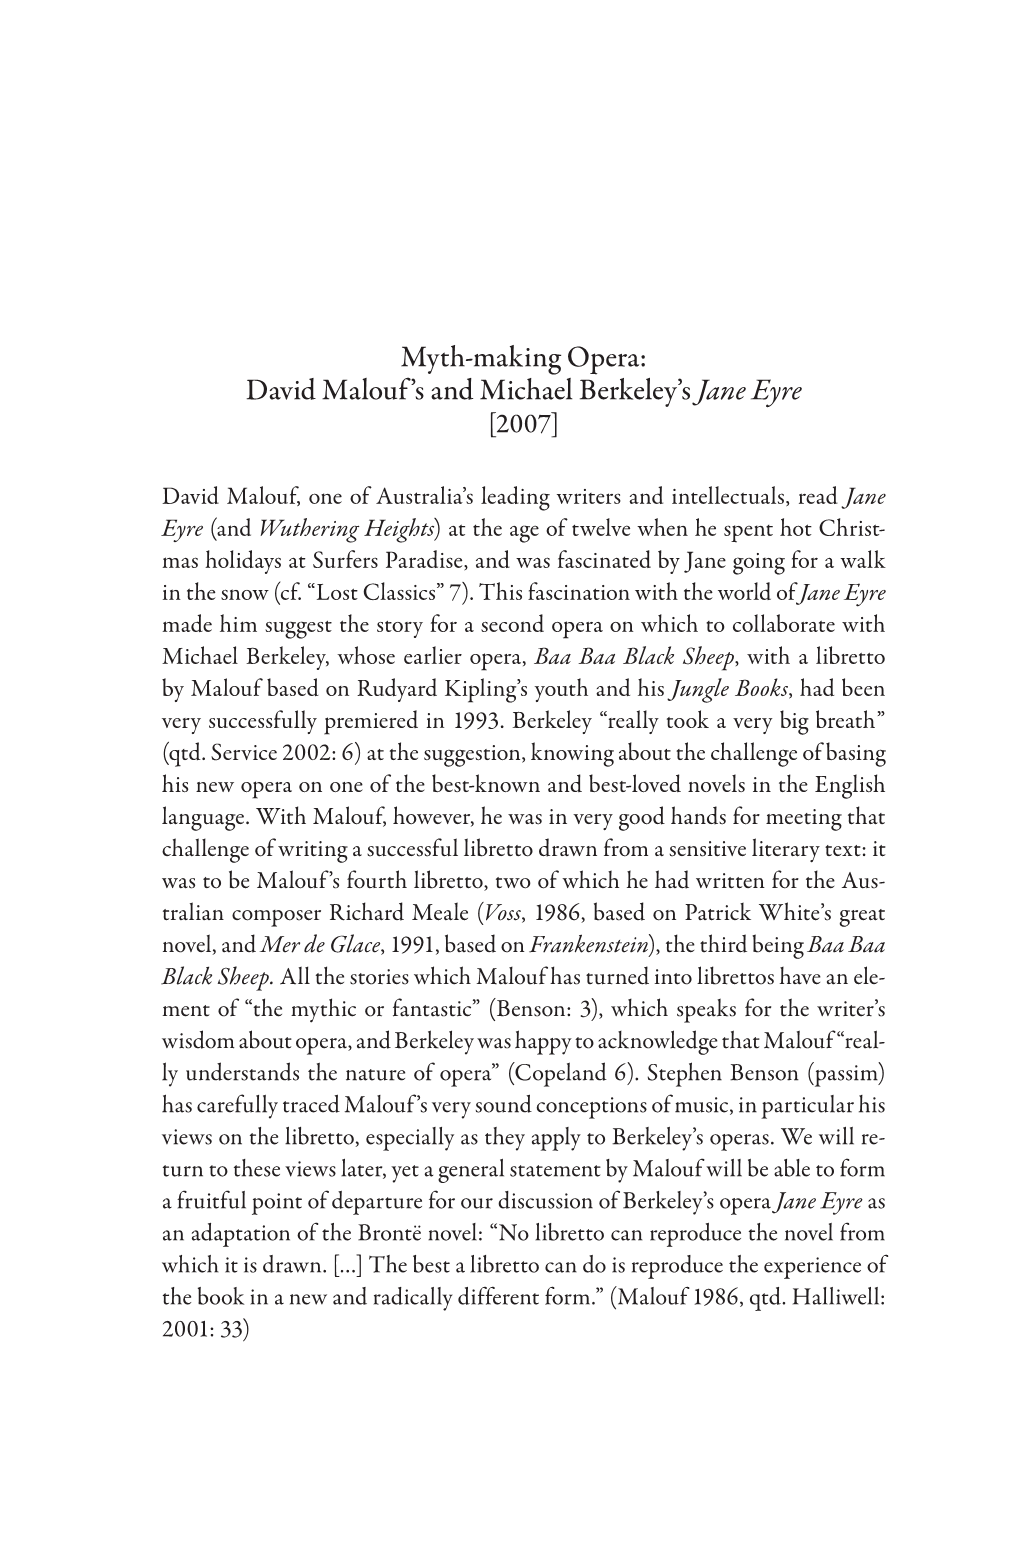 Myth-Making Opera: David Malouf 'S and Michael Berkeley's Jane Eyre